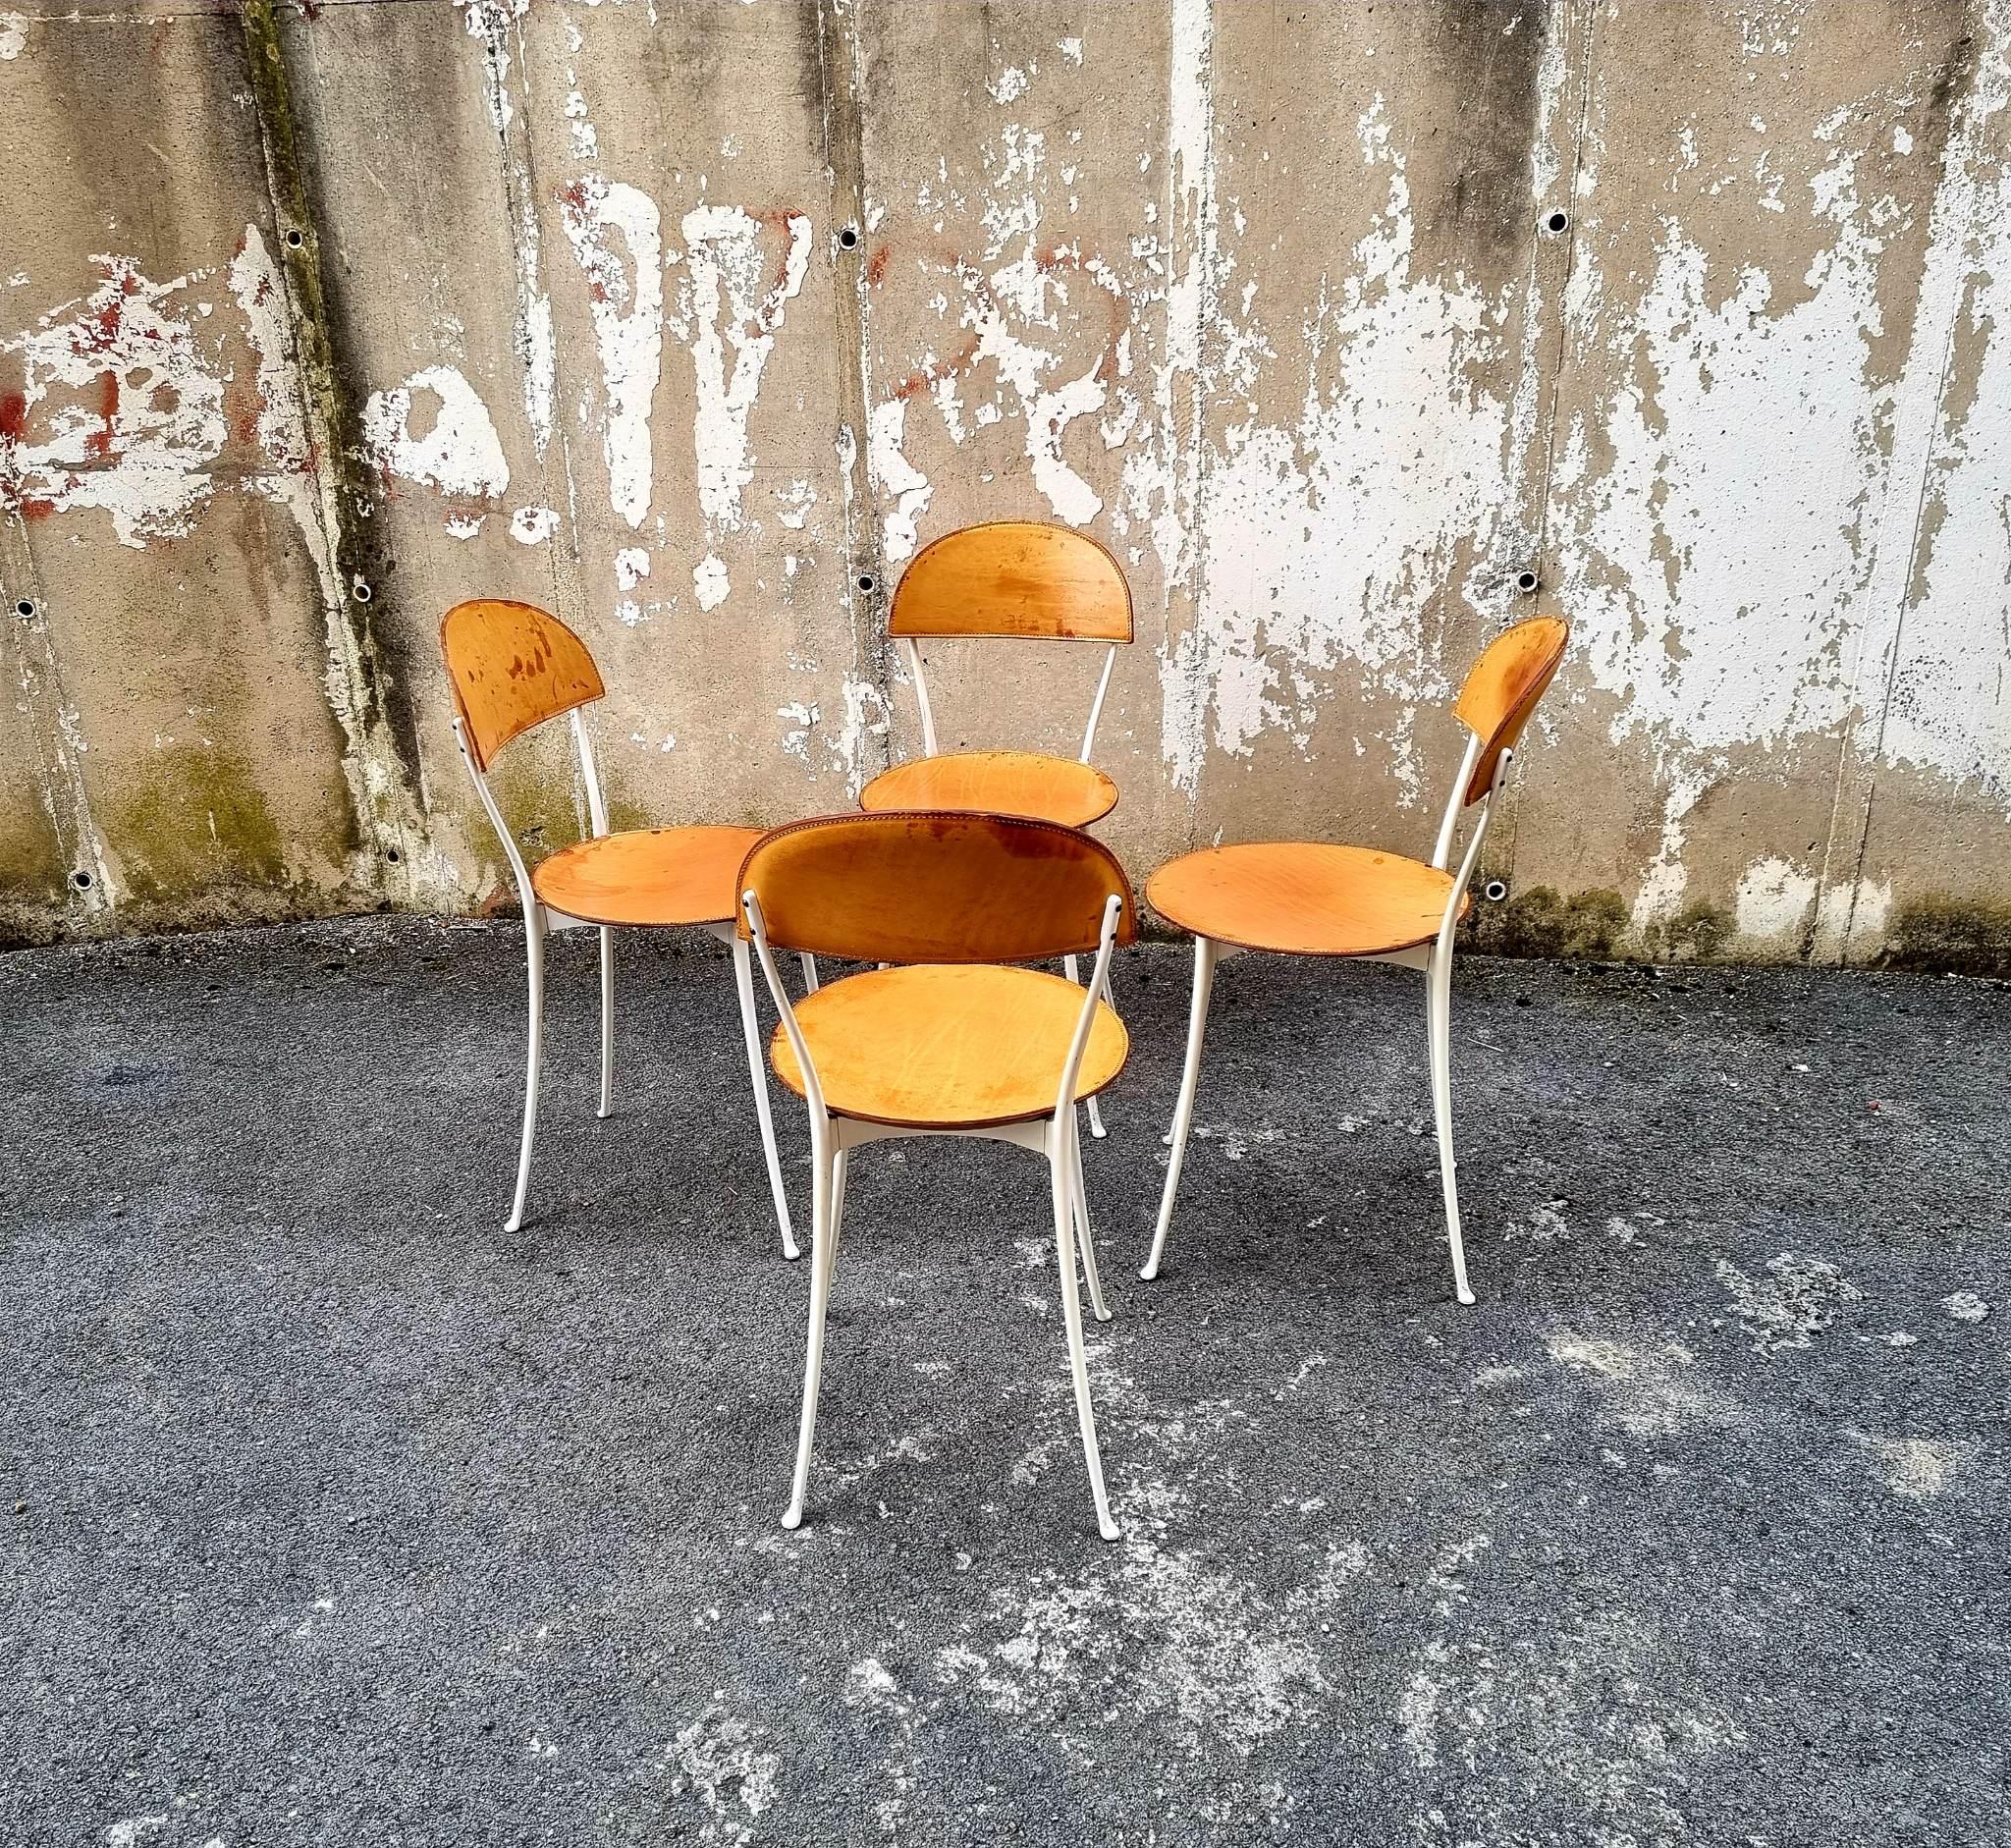 Rare chaise conçue par Enzo Mari dans les années 80
Modèle Tonietta 2090
Ce modèle est présenté au musée de Moma New York
Ensemble de 4 chaises.
En 1987, avec ce projet, Enzo Mari a remporté le Compasso D'Oro. 
Structure en aluminium émaillé ;